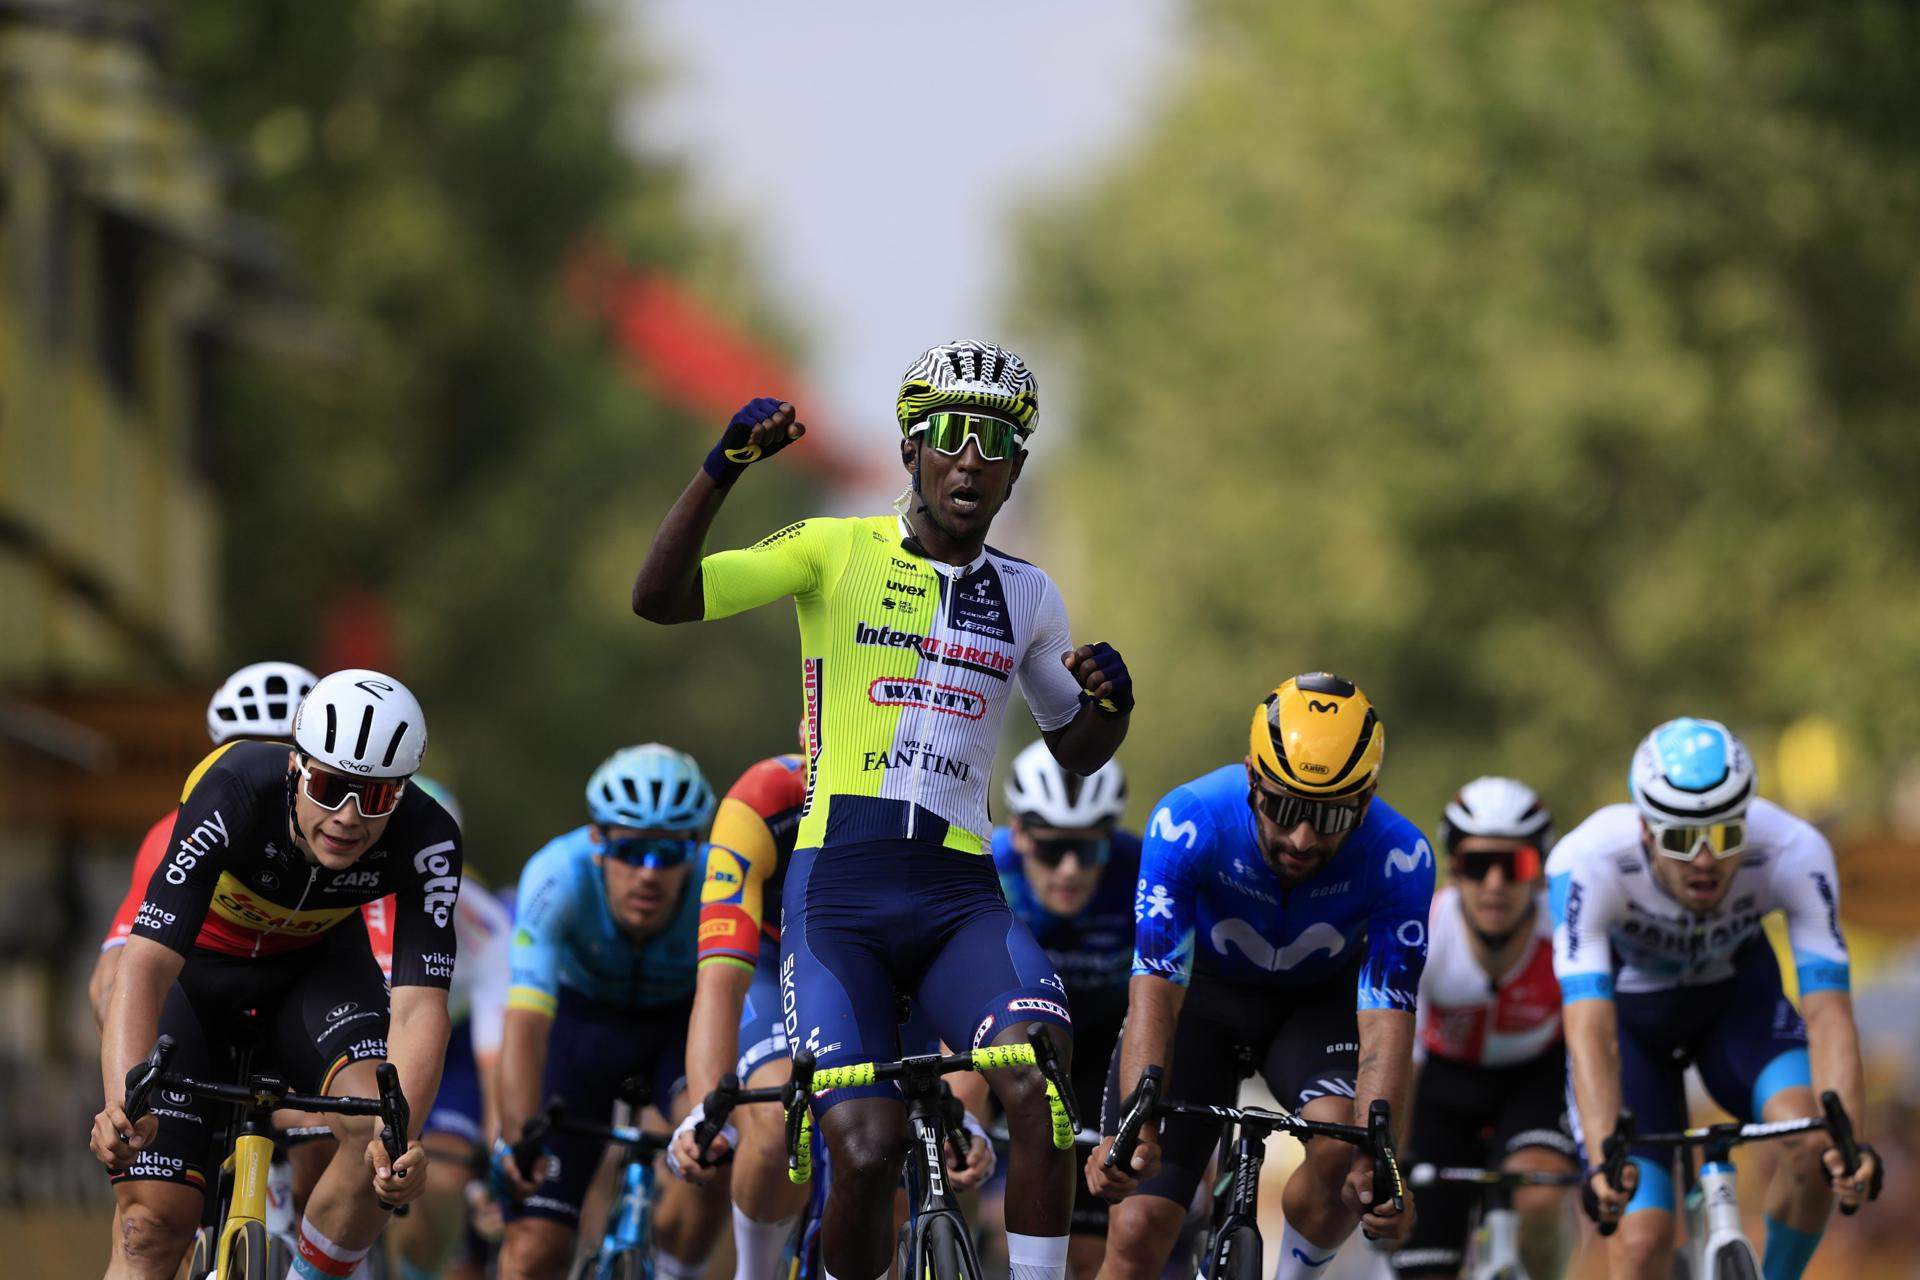 Victoria histórica en el Tour de Francia: Biniam Girmay, primer africano negro que gana una etapa